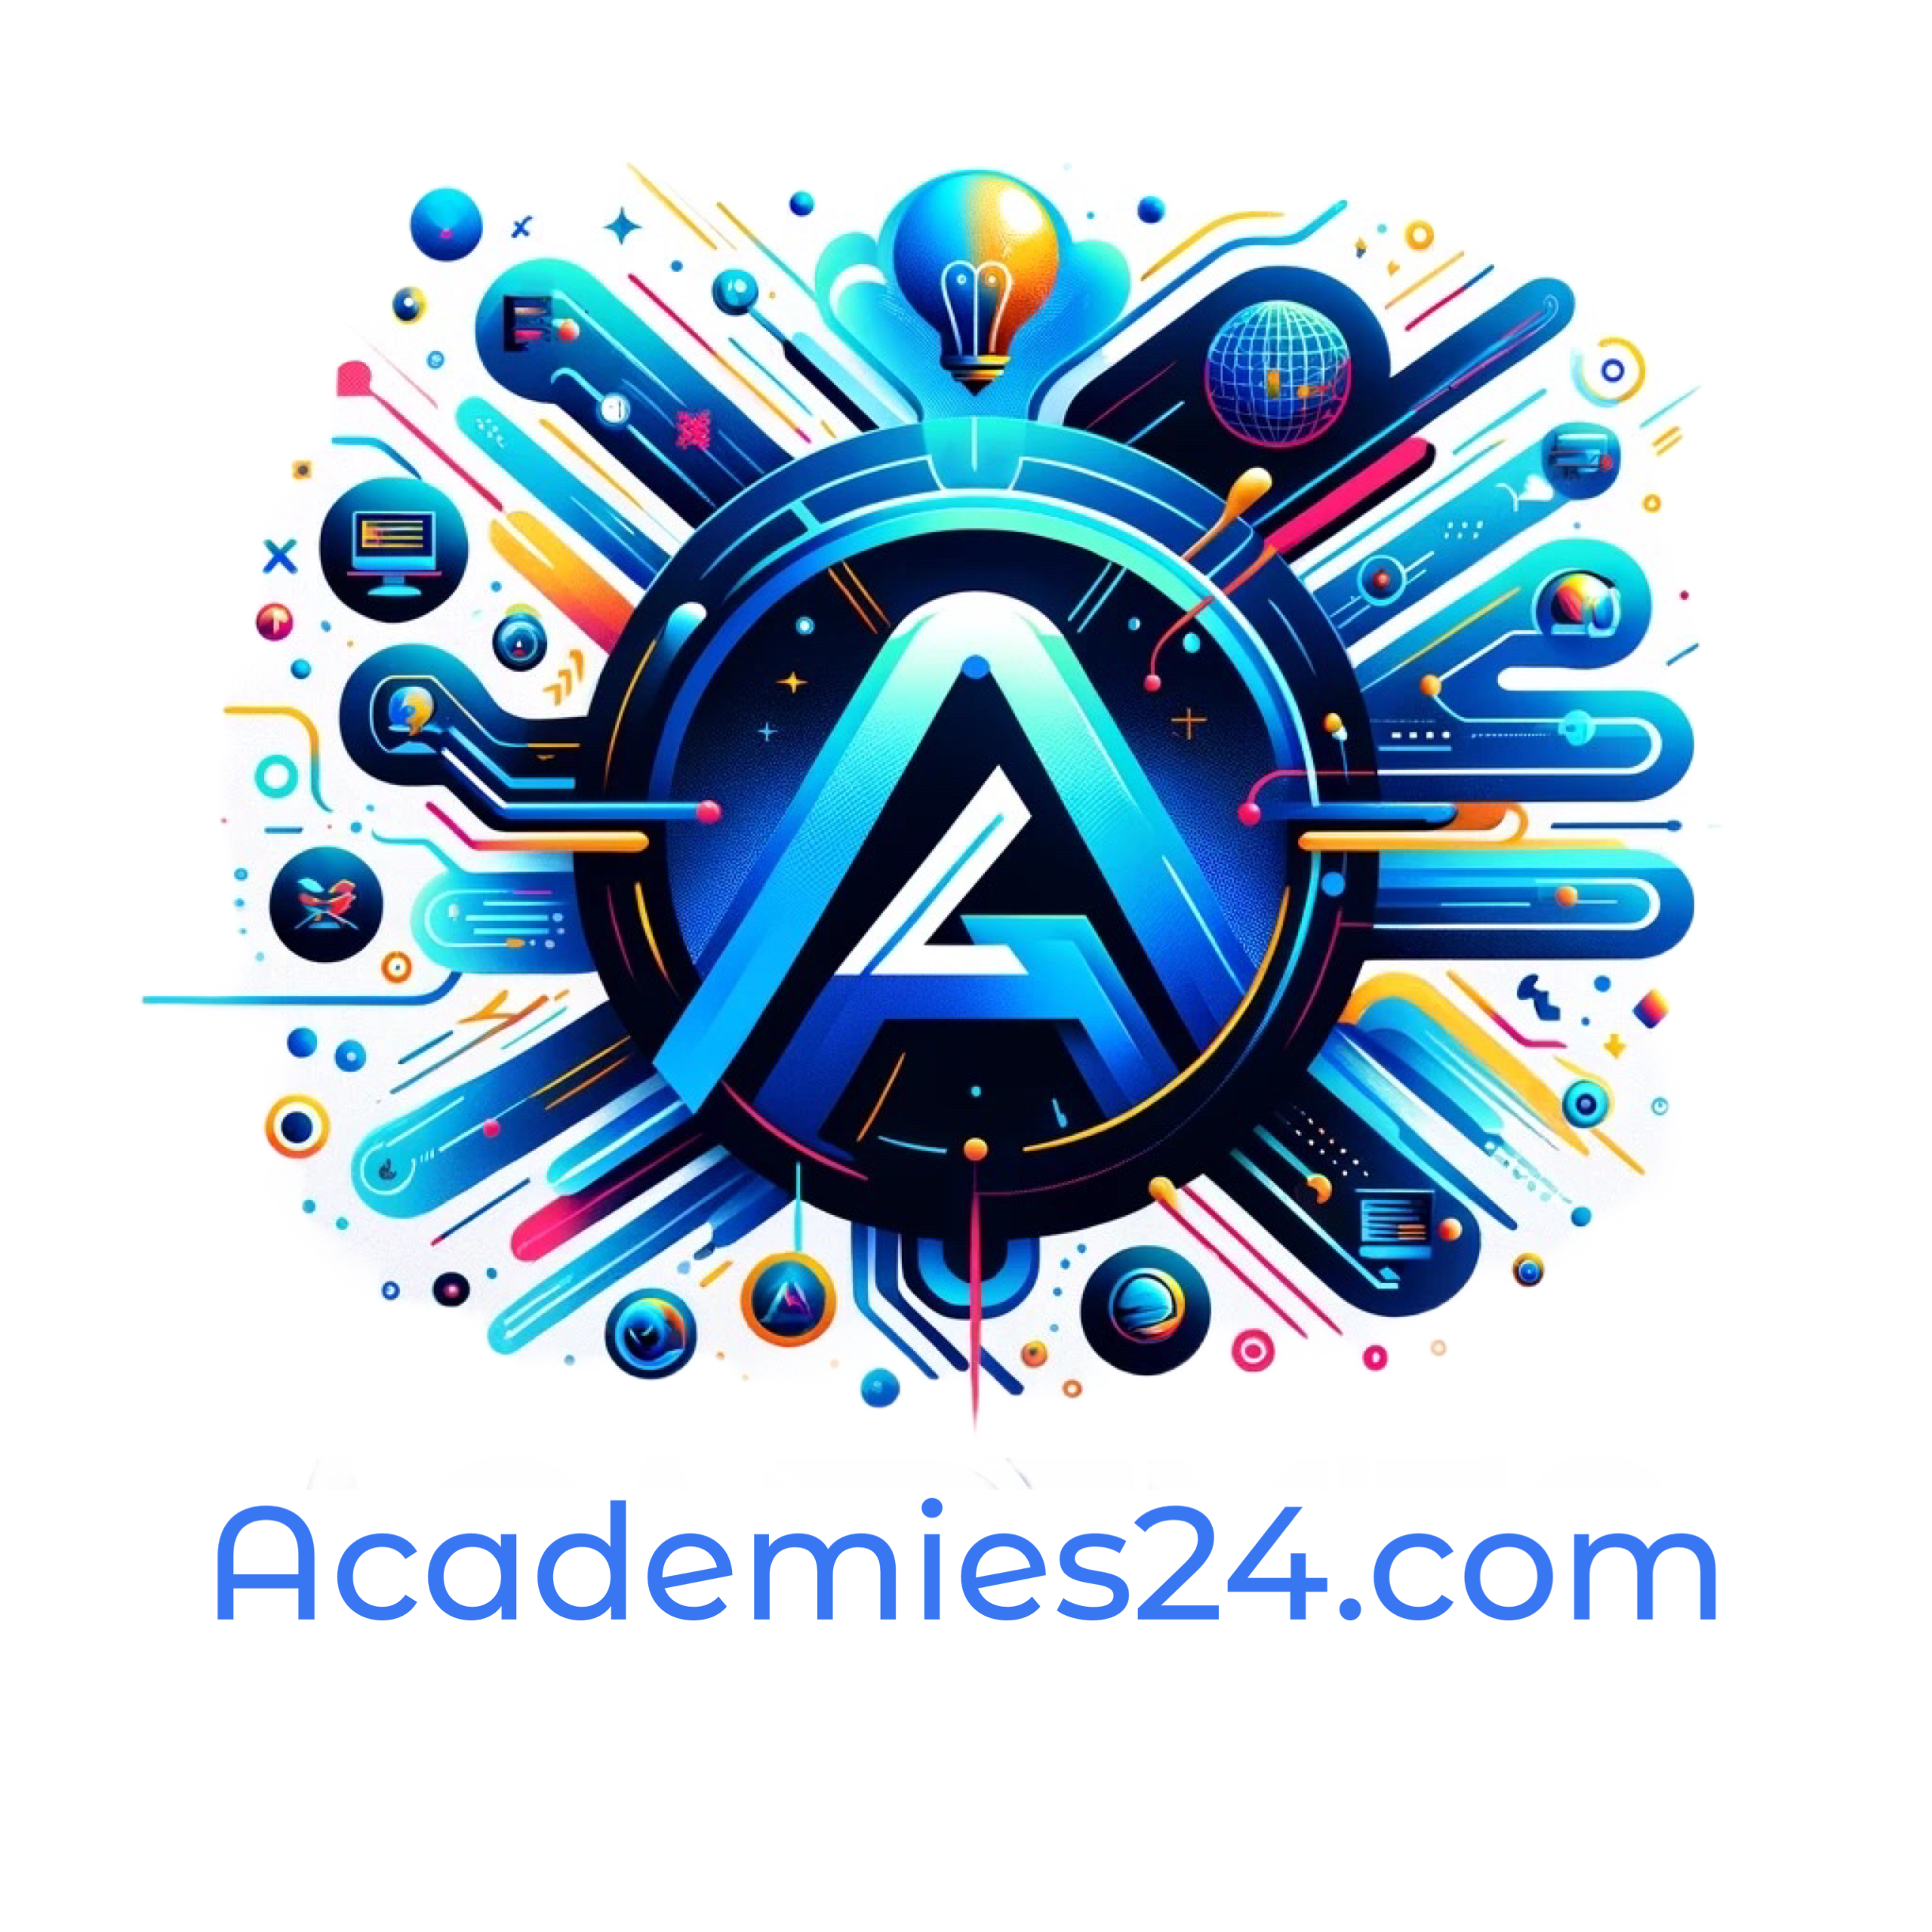 Academies24